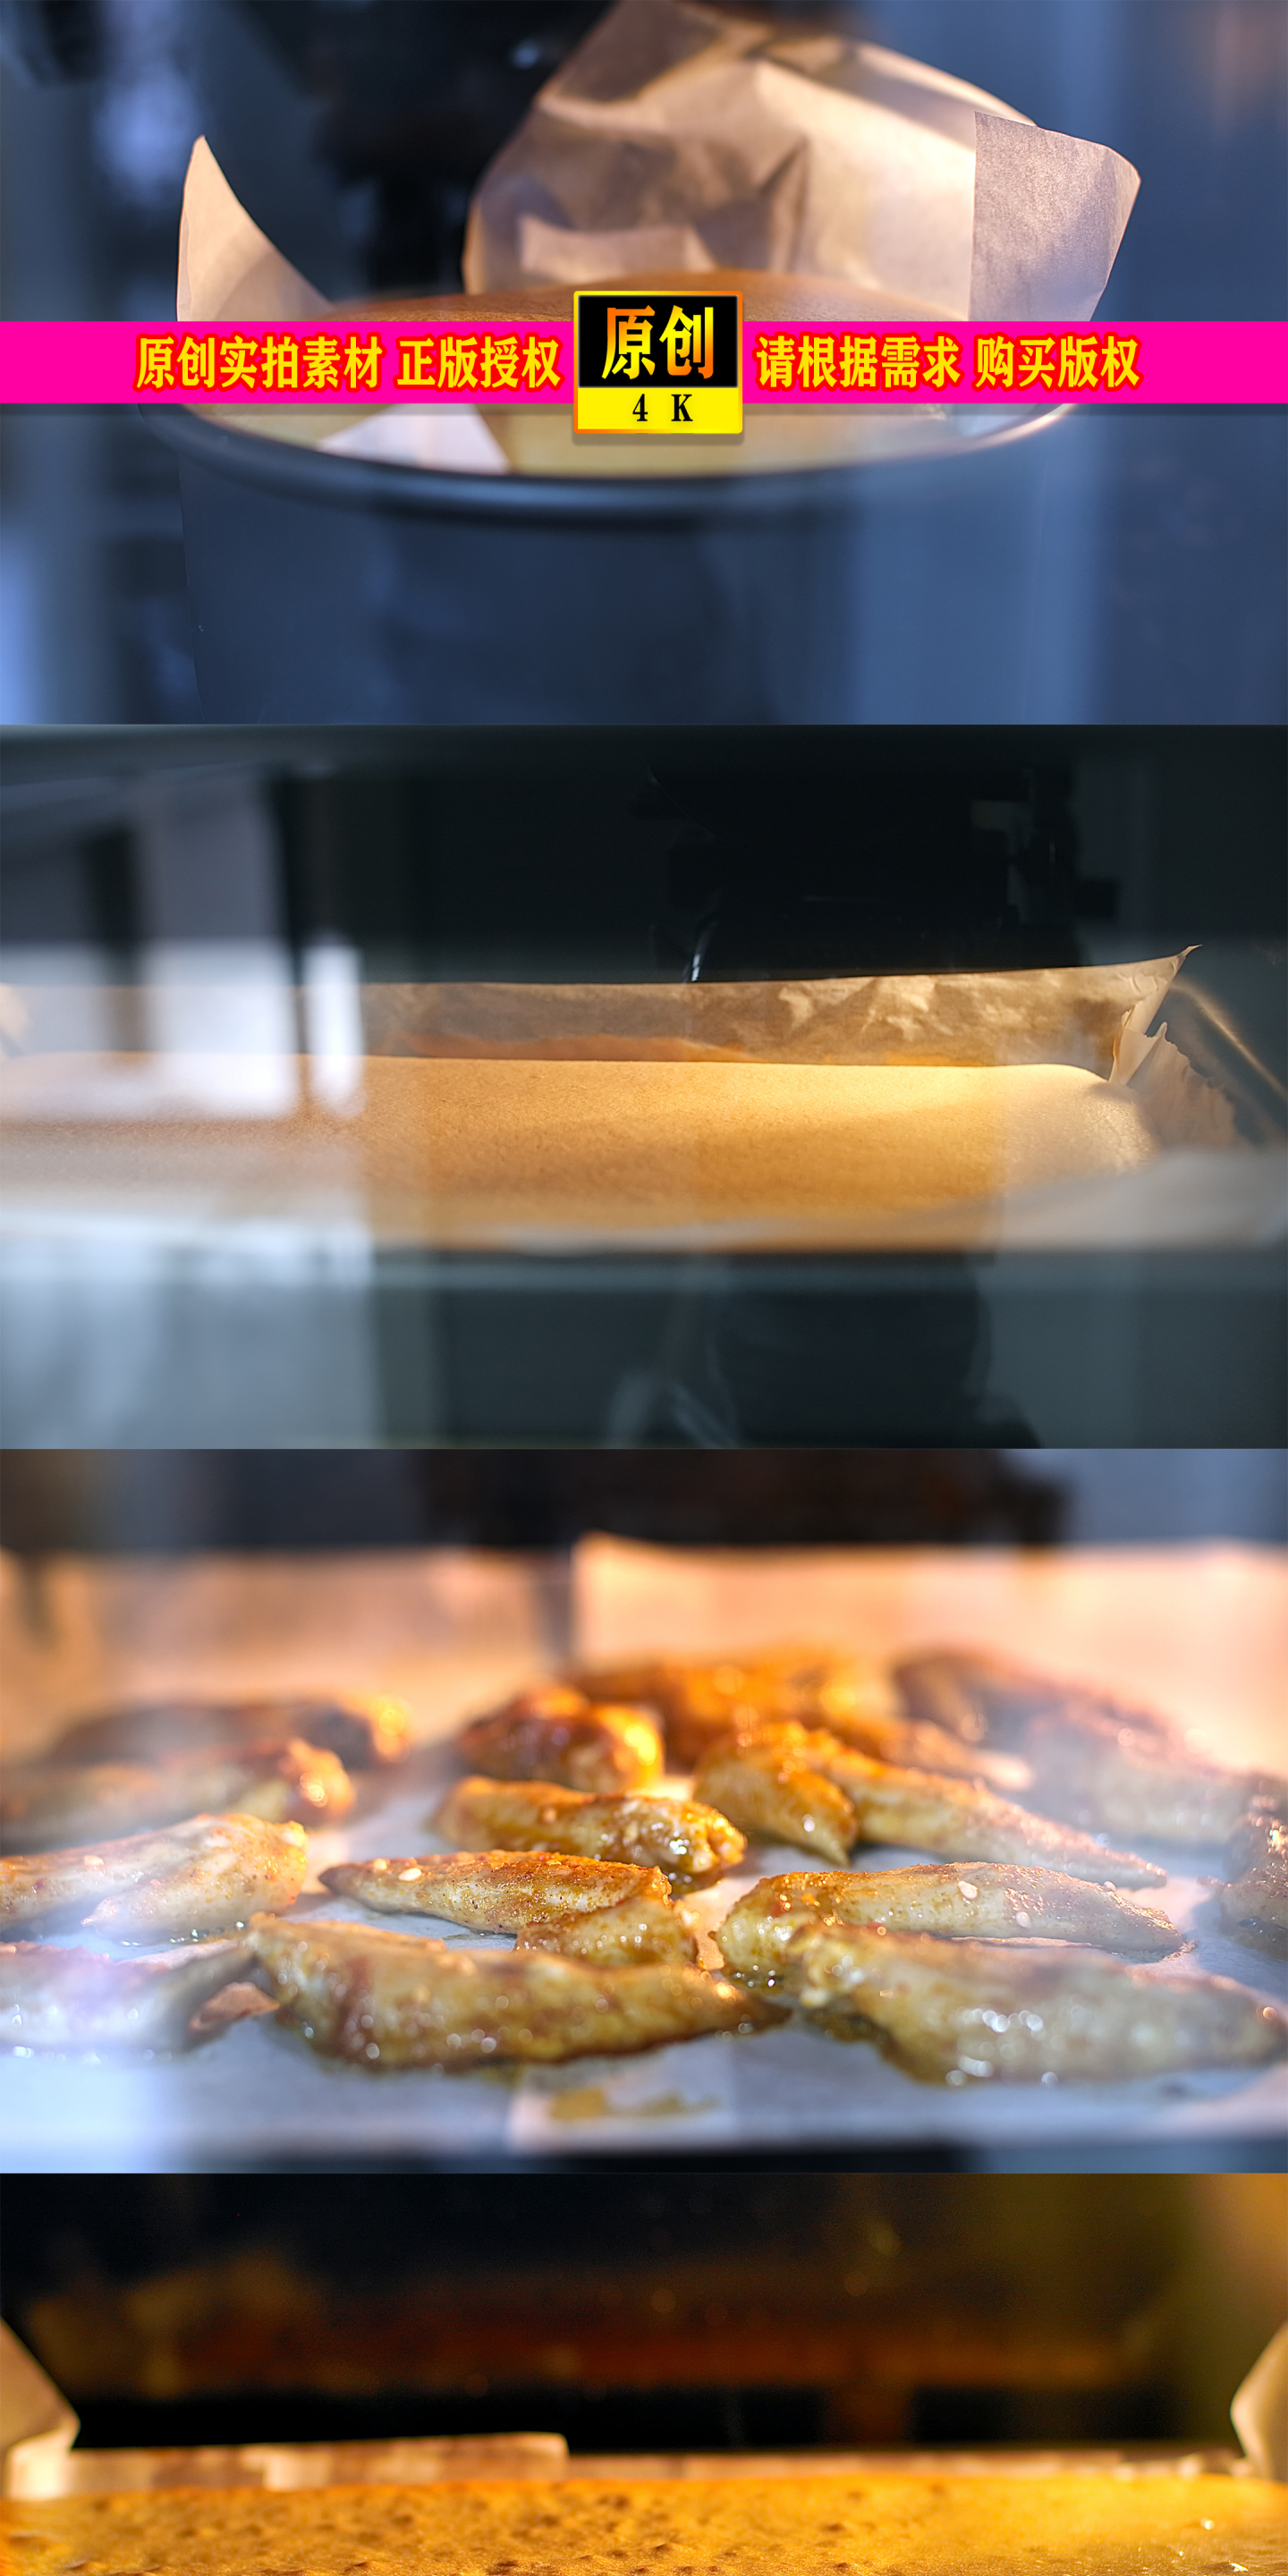 烤箱延时摄影烤面包烤鸡翅烤蛋糕烤箱广告